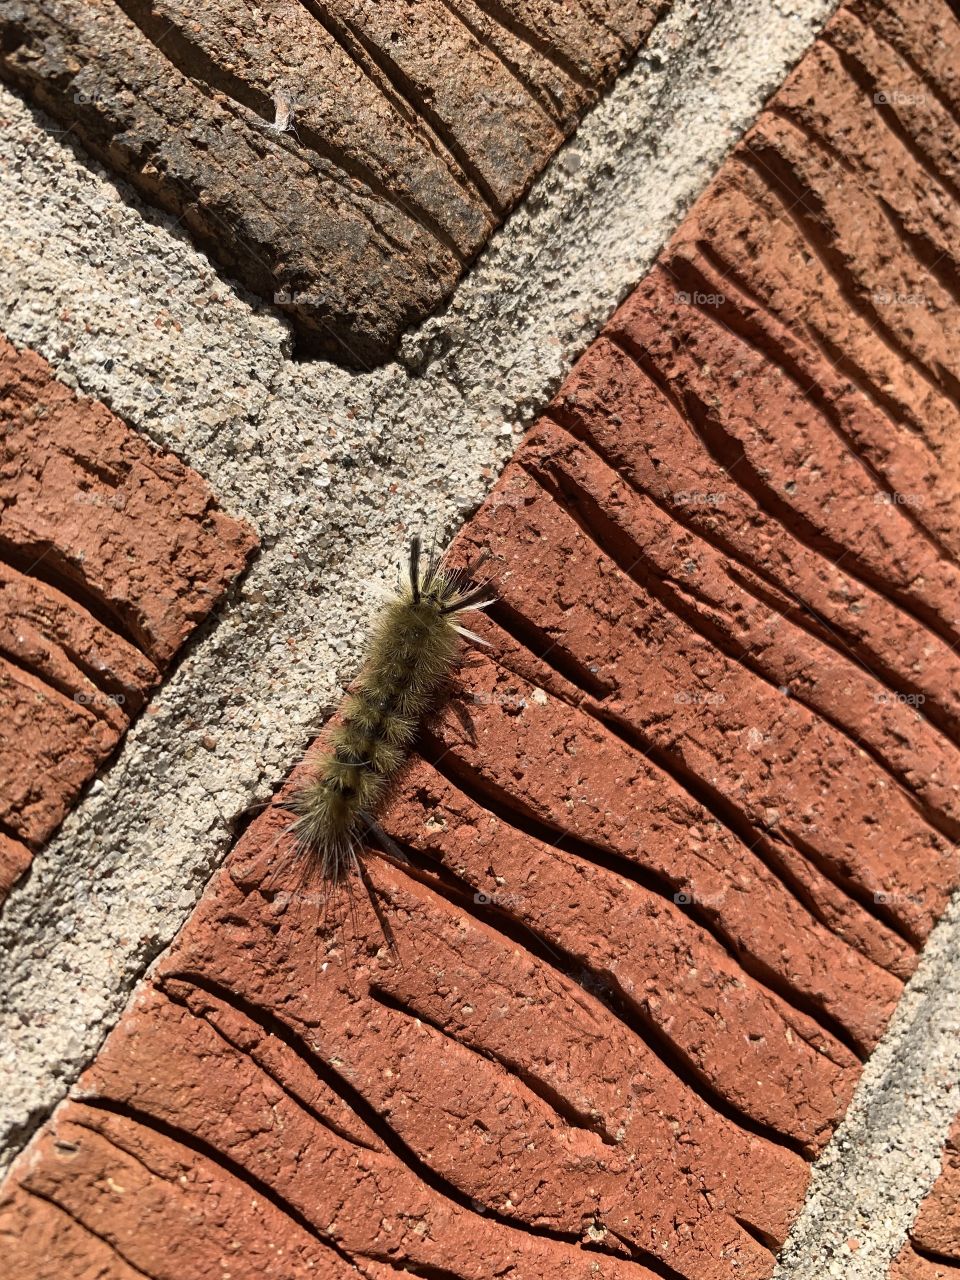 Caterpillar on brick